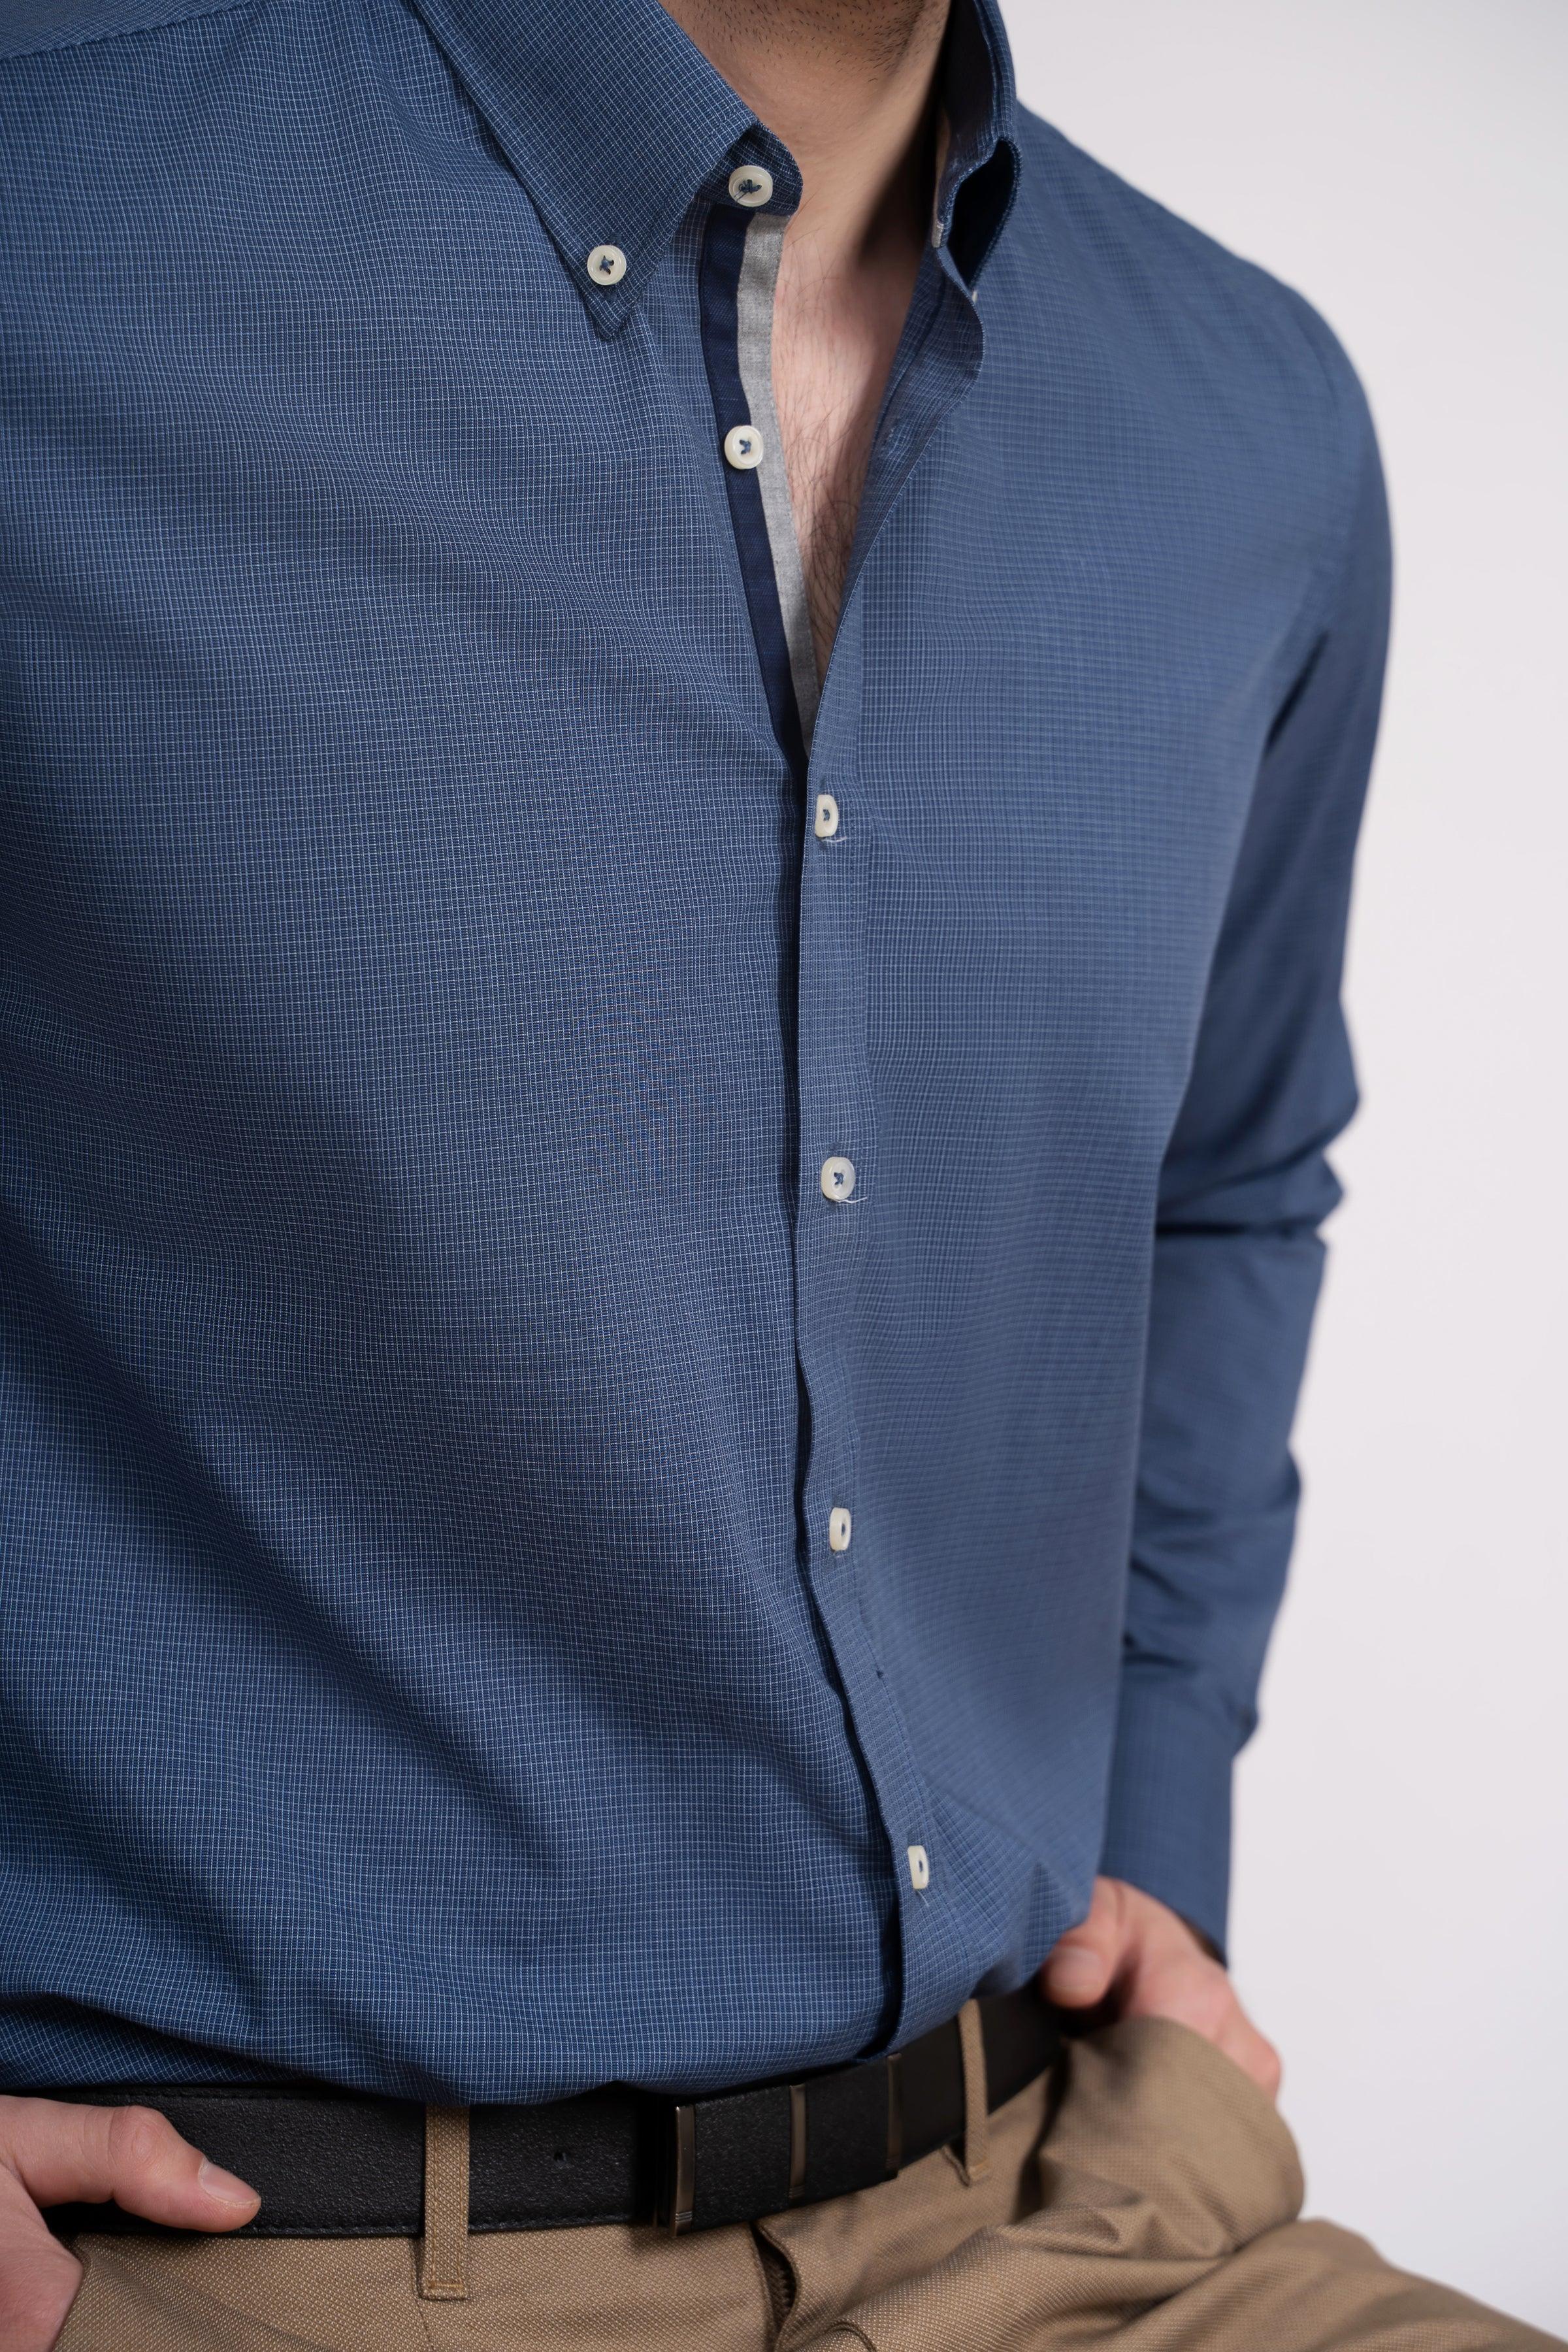 SEMI FORMAL SHIRT BLUE CHECK at Charcoal Clothing